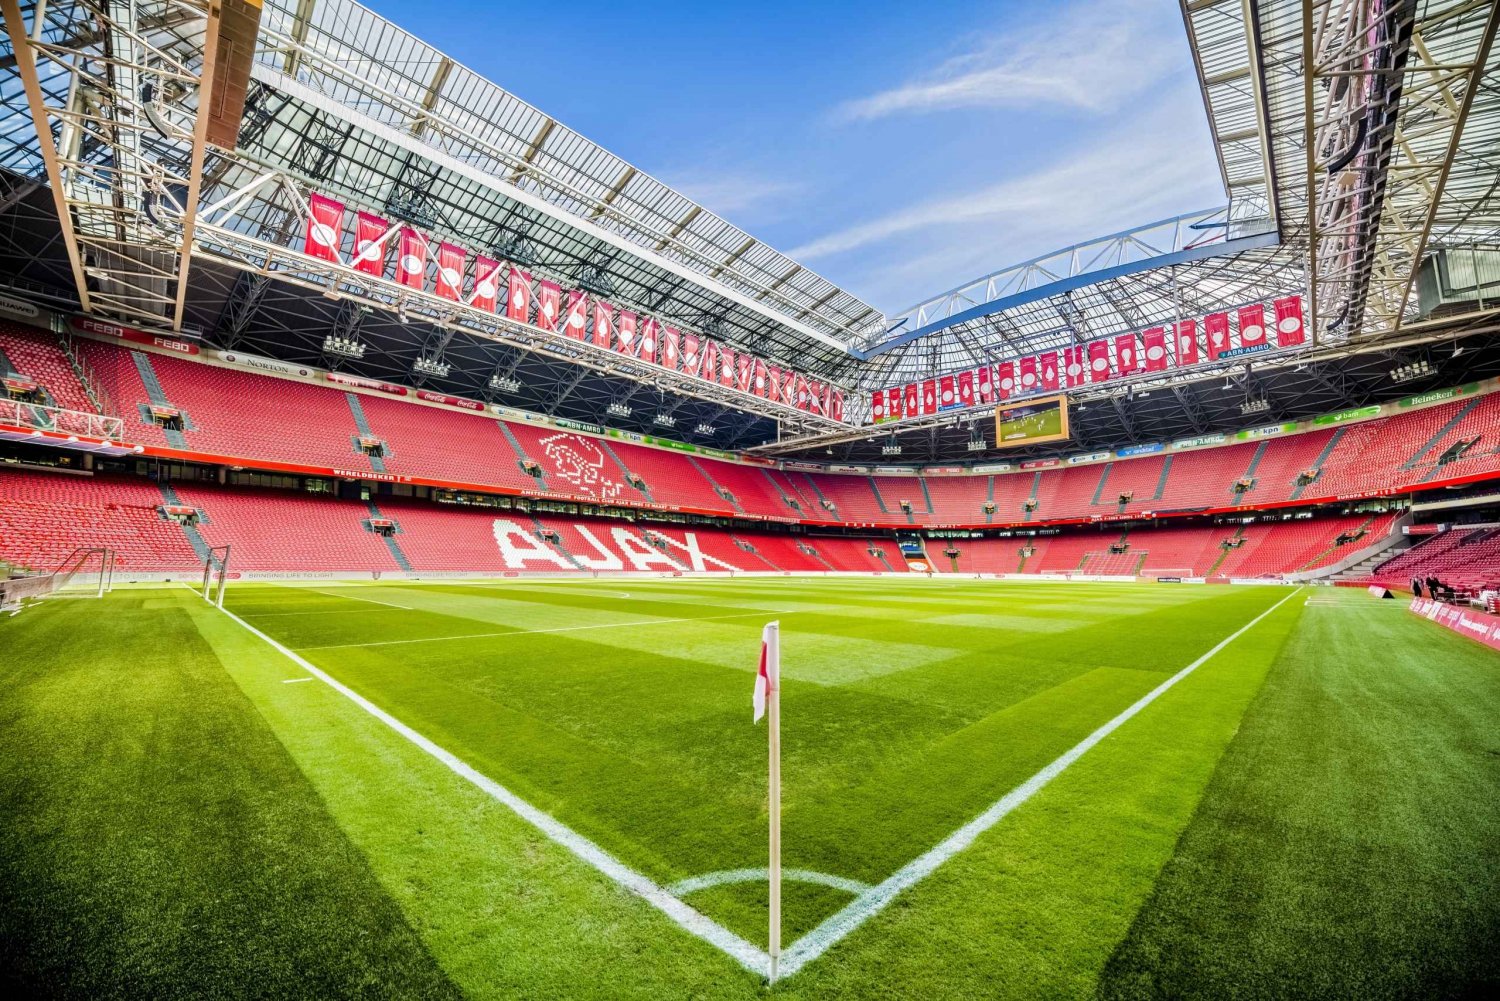 Johan Cruijff ArenA Stadium 75-Minute Tour